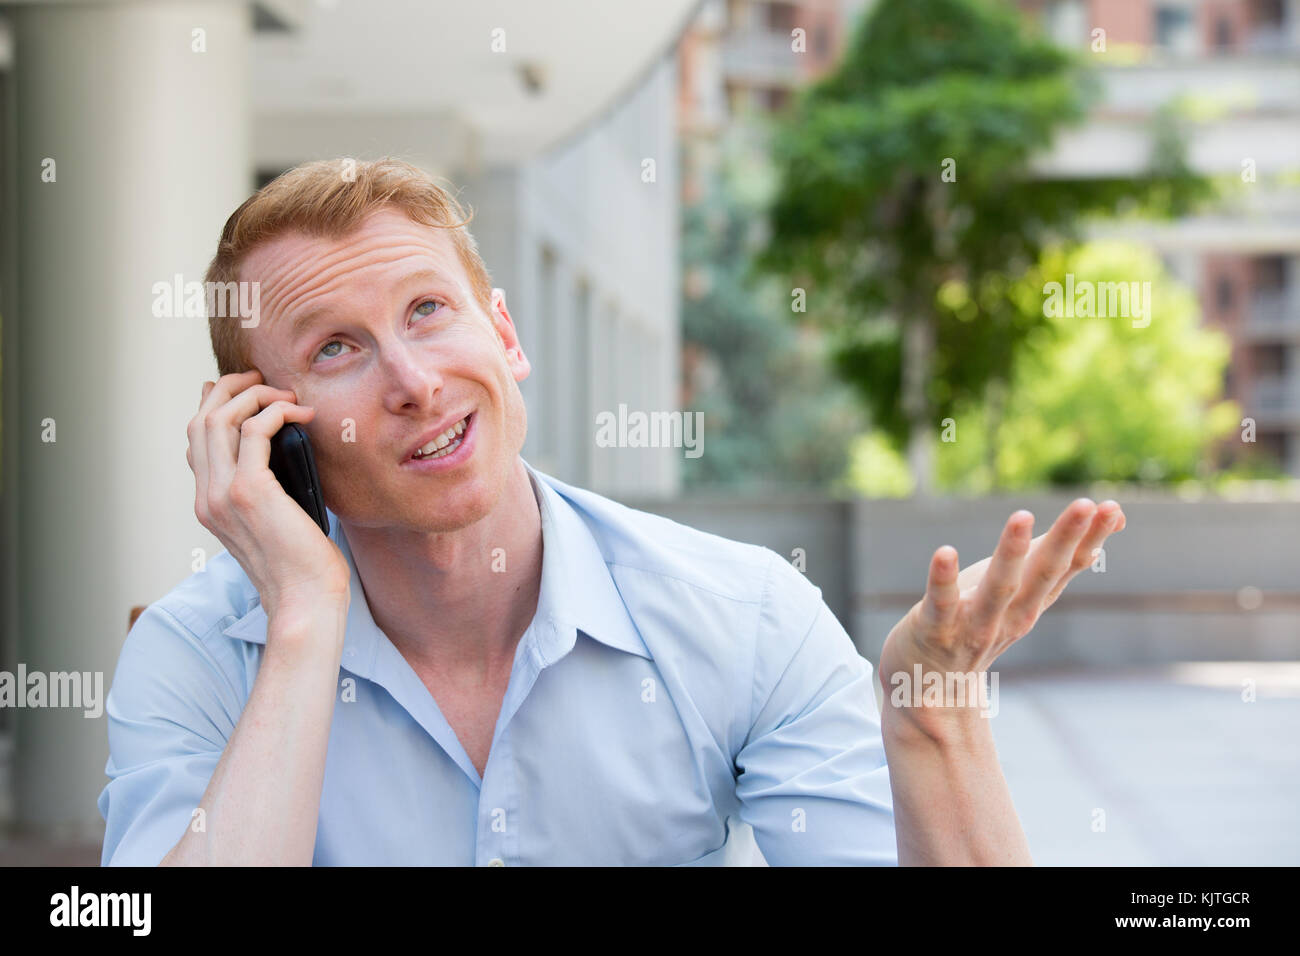 Closeup portrait, jeune homme contrarié, frustré, énervé par quelqu'un parler sur son téléphone mobile, de mauvaises nouvelles, isolé à l'extérieur à l'extérieur de l'arrière-plan. lo Banque D'Images